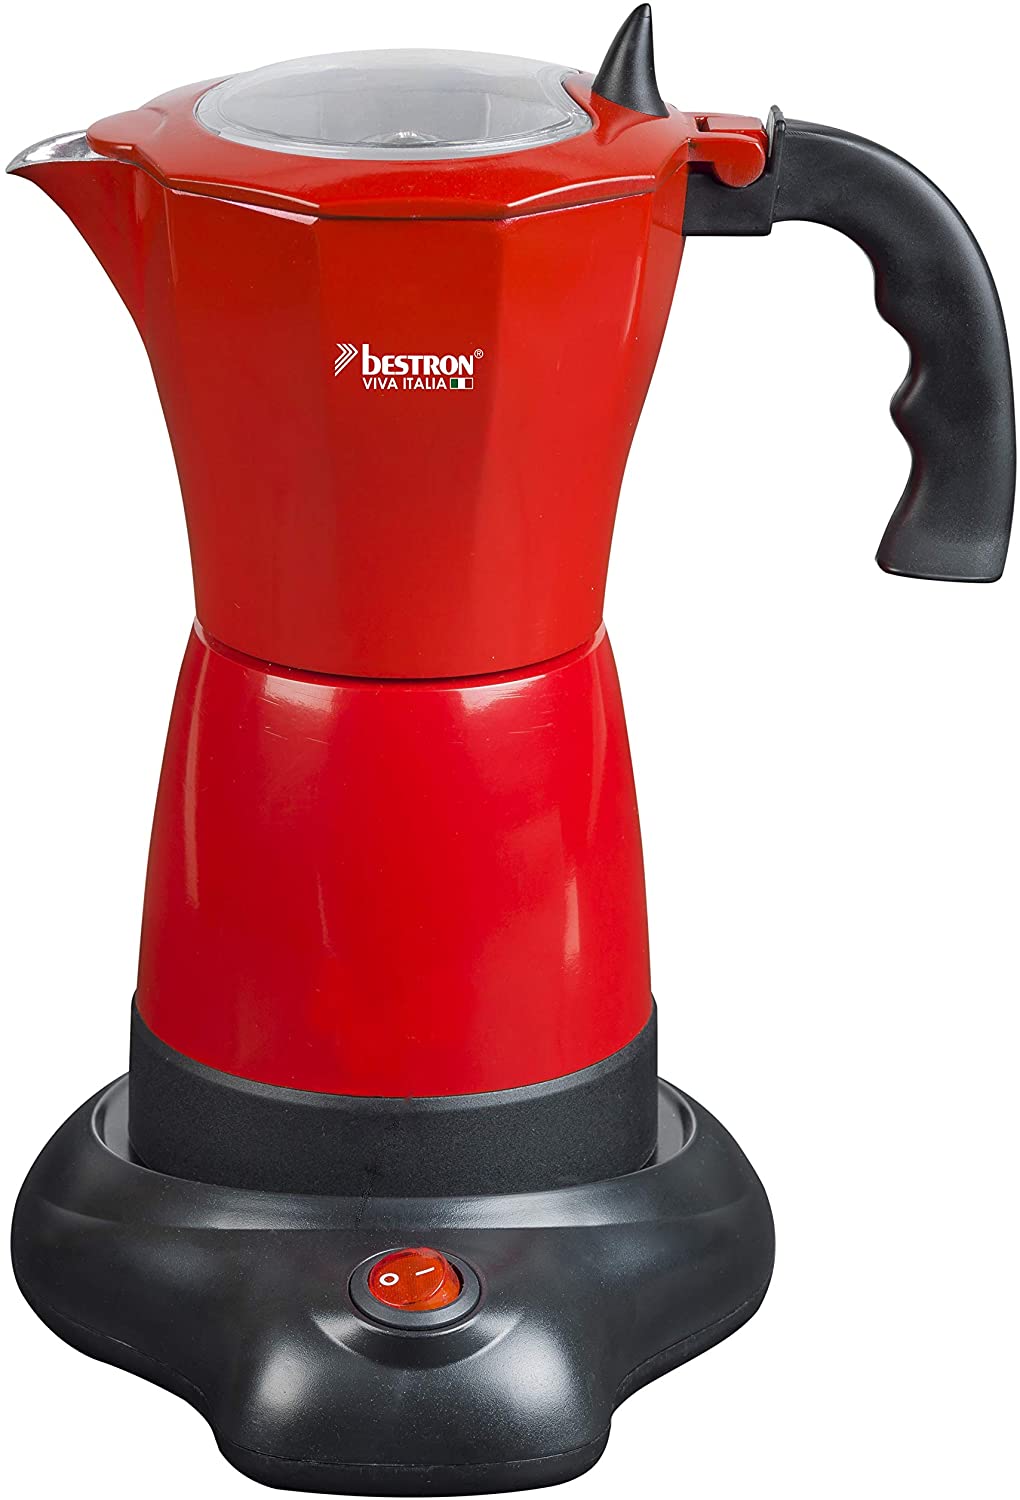 Bestron Viva Italia Electric Espresso Maker with Base for 6 Espresso Cups 180 ml 480 Watt Aluminium Red